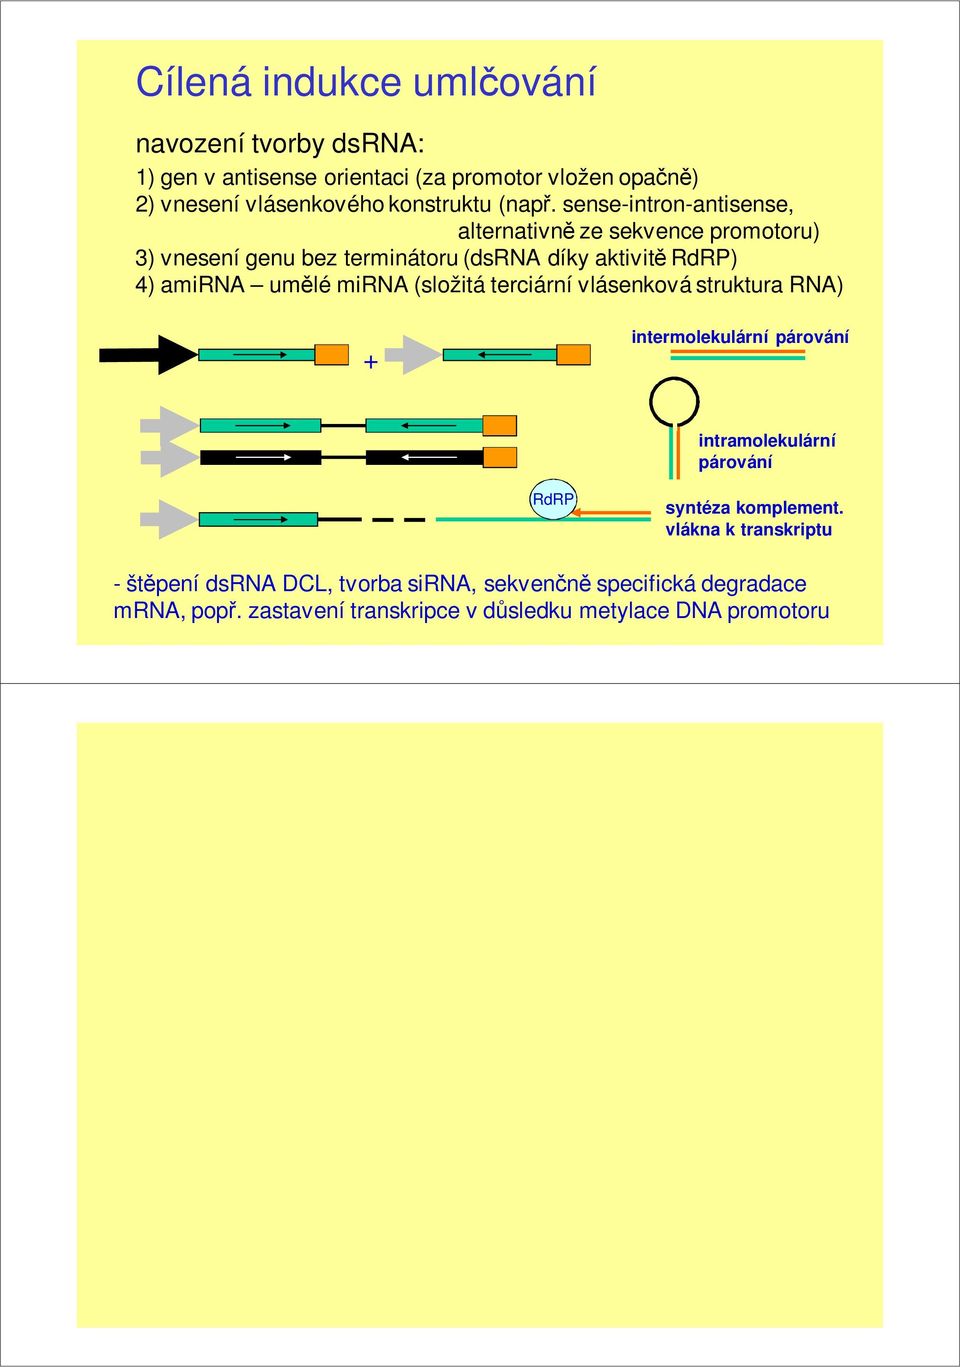 sense-intron-antisense, alternativně ze sekvence promotoru) 3) vnesení genu bez terminátoru (dsrna díky aktivitě RdRP) 4) amirna umělé mirna